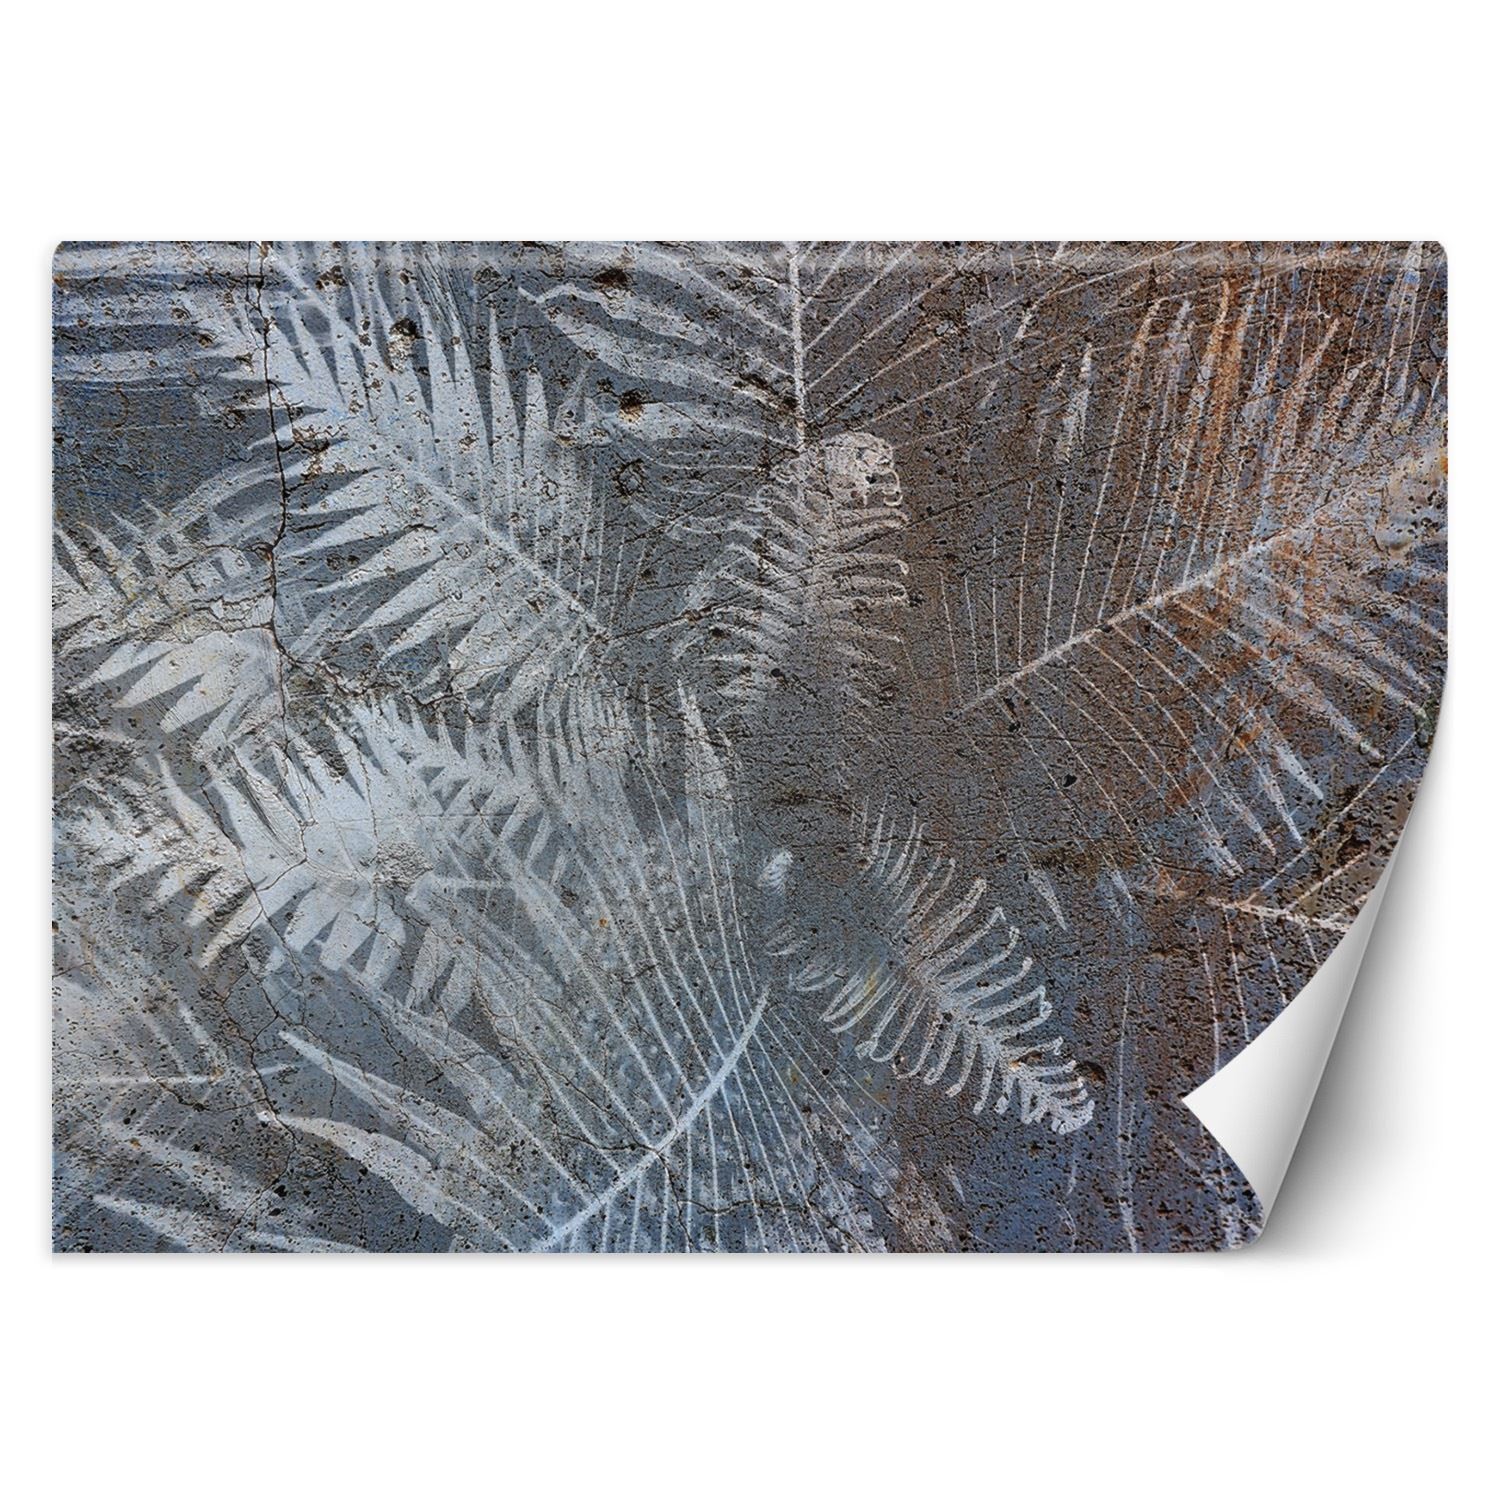 Trend24 – Behang – Palmblaadjes Op Beton – Behangpapier – Behang Woonkamer – Fotobehang – 200x140x2 cm – Incl. behanglijm